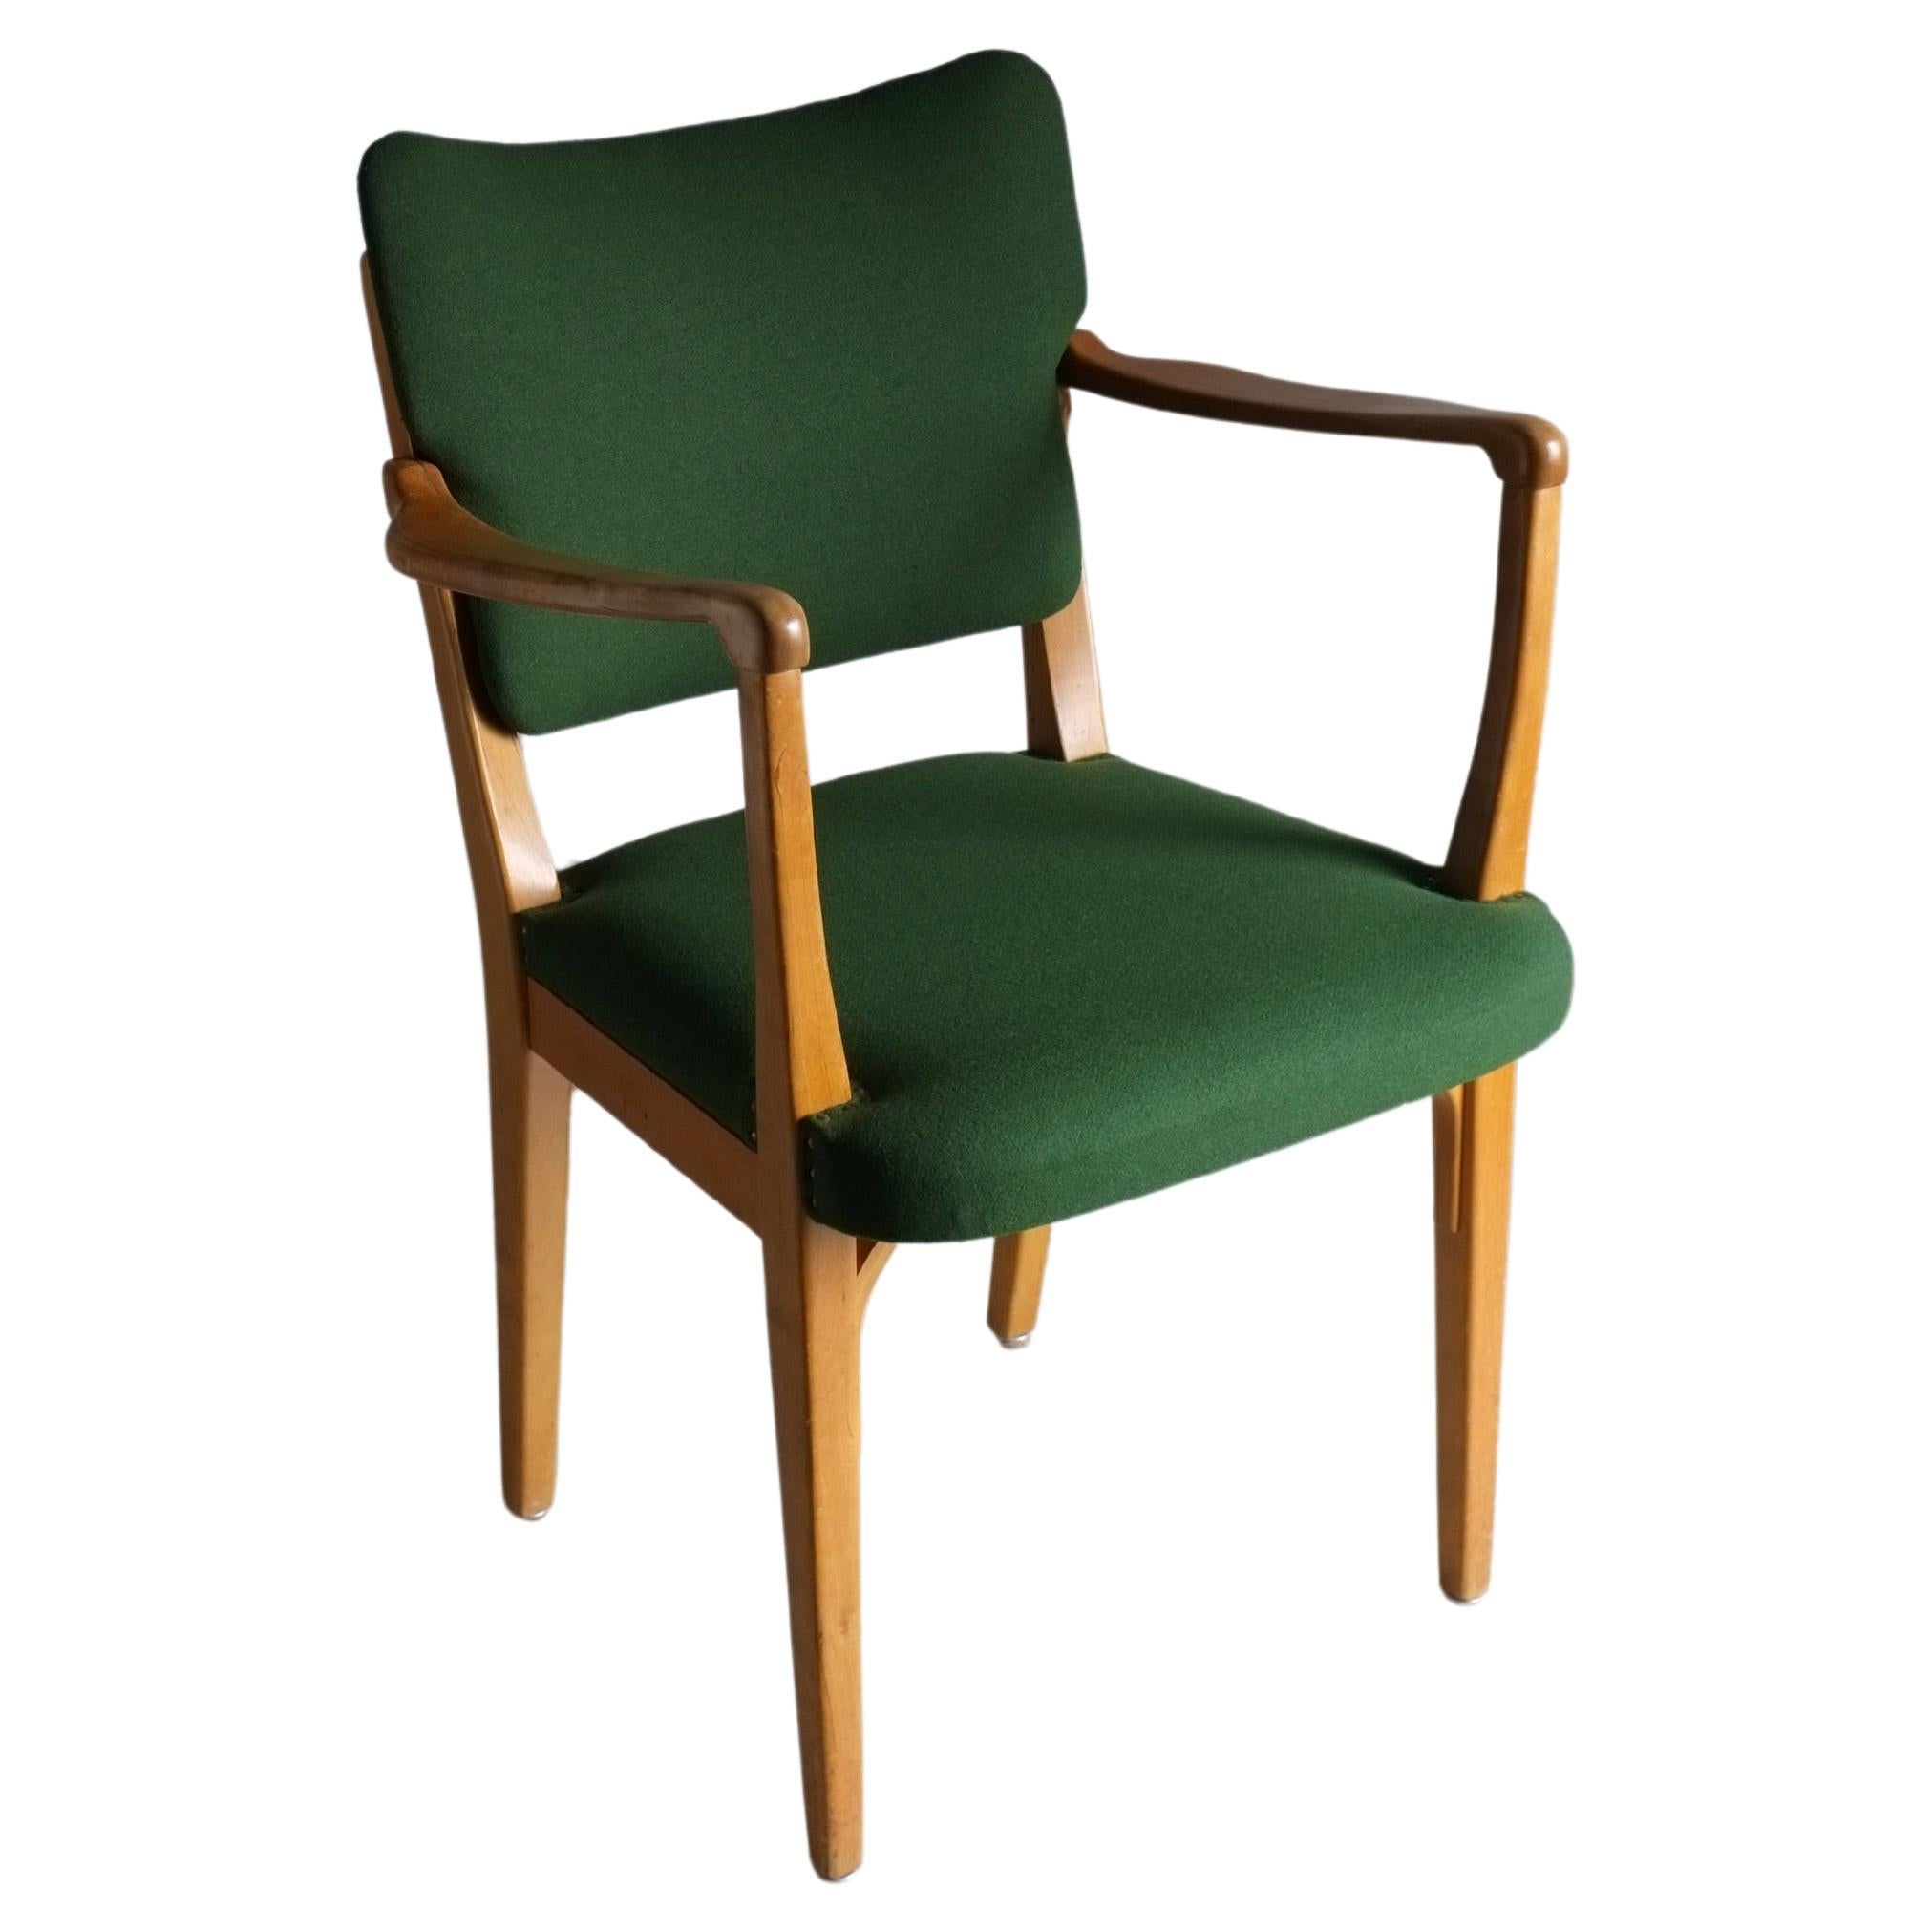 Sessel aus grünem Buchenholz, Nordiska Kompaniet, Schweden 1940er Jahre